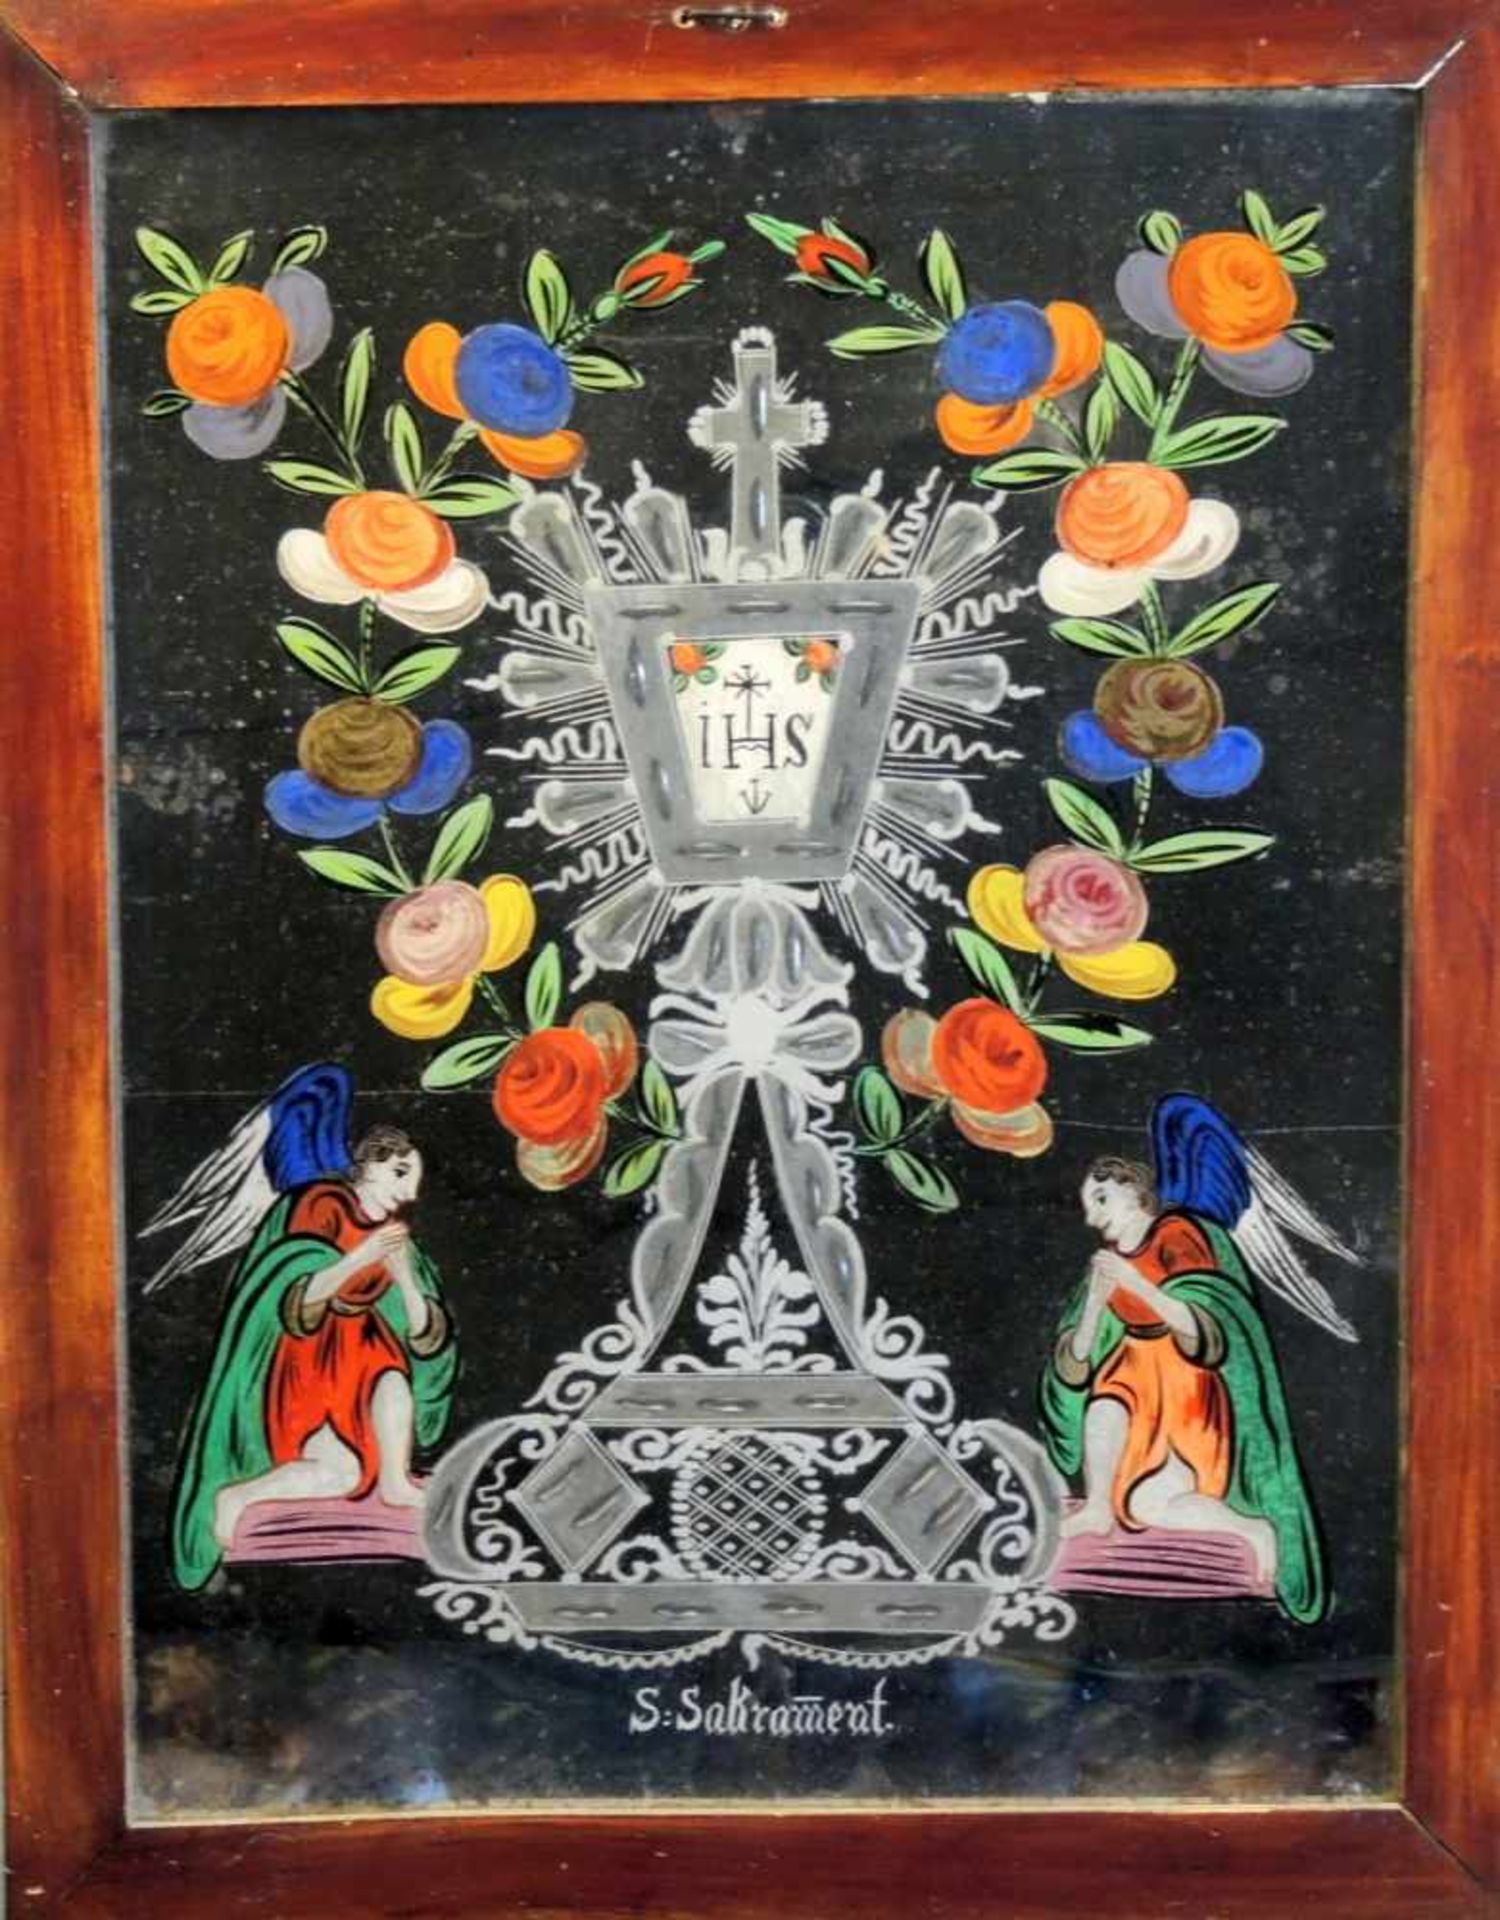 Nonnenspiegel Darstellung des Hl. Sakrament der Eucharistie, mit Blumen und zwei knieenden Engeln.